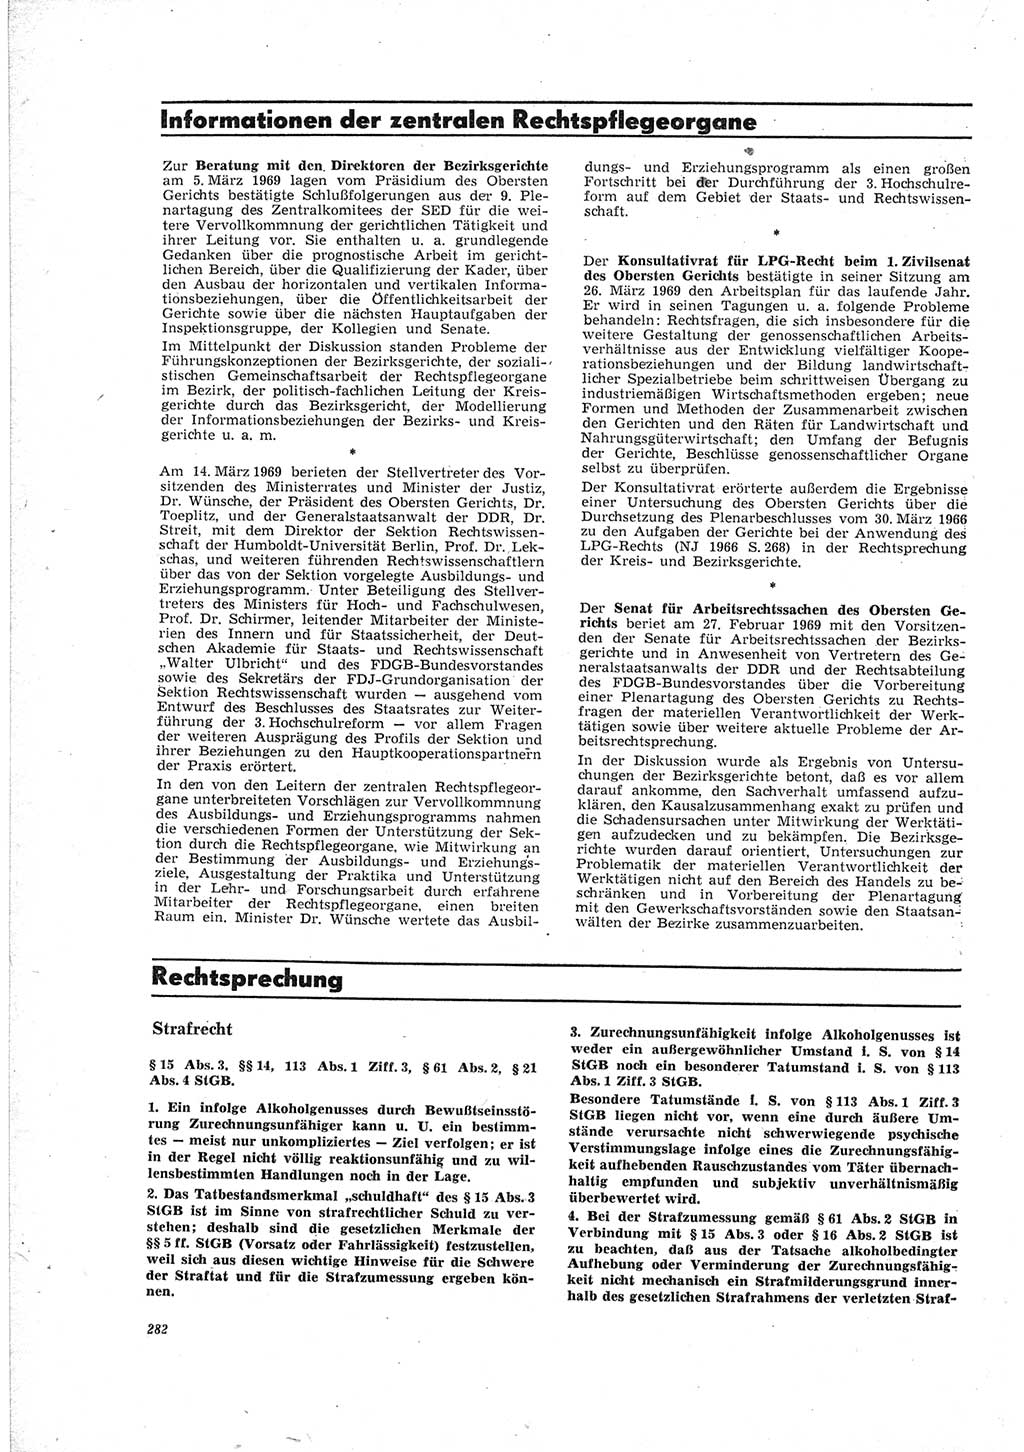 Neue Justiz (NJ), Zeitschrift für Recht und Rechtswissenschaft [Deutsche Demokratische Republik (DDR)], 23. Jahrgang 1969, Seite 282 (NJ DDR 1969, S. 282)